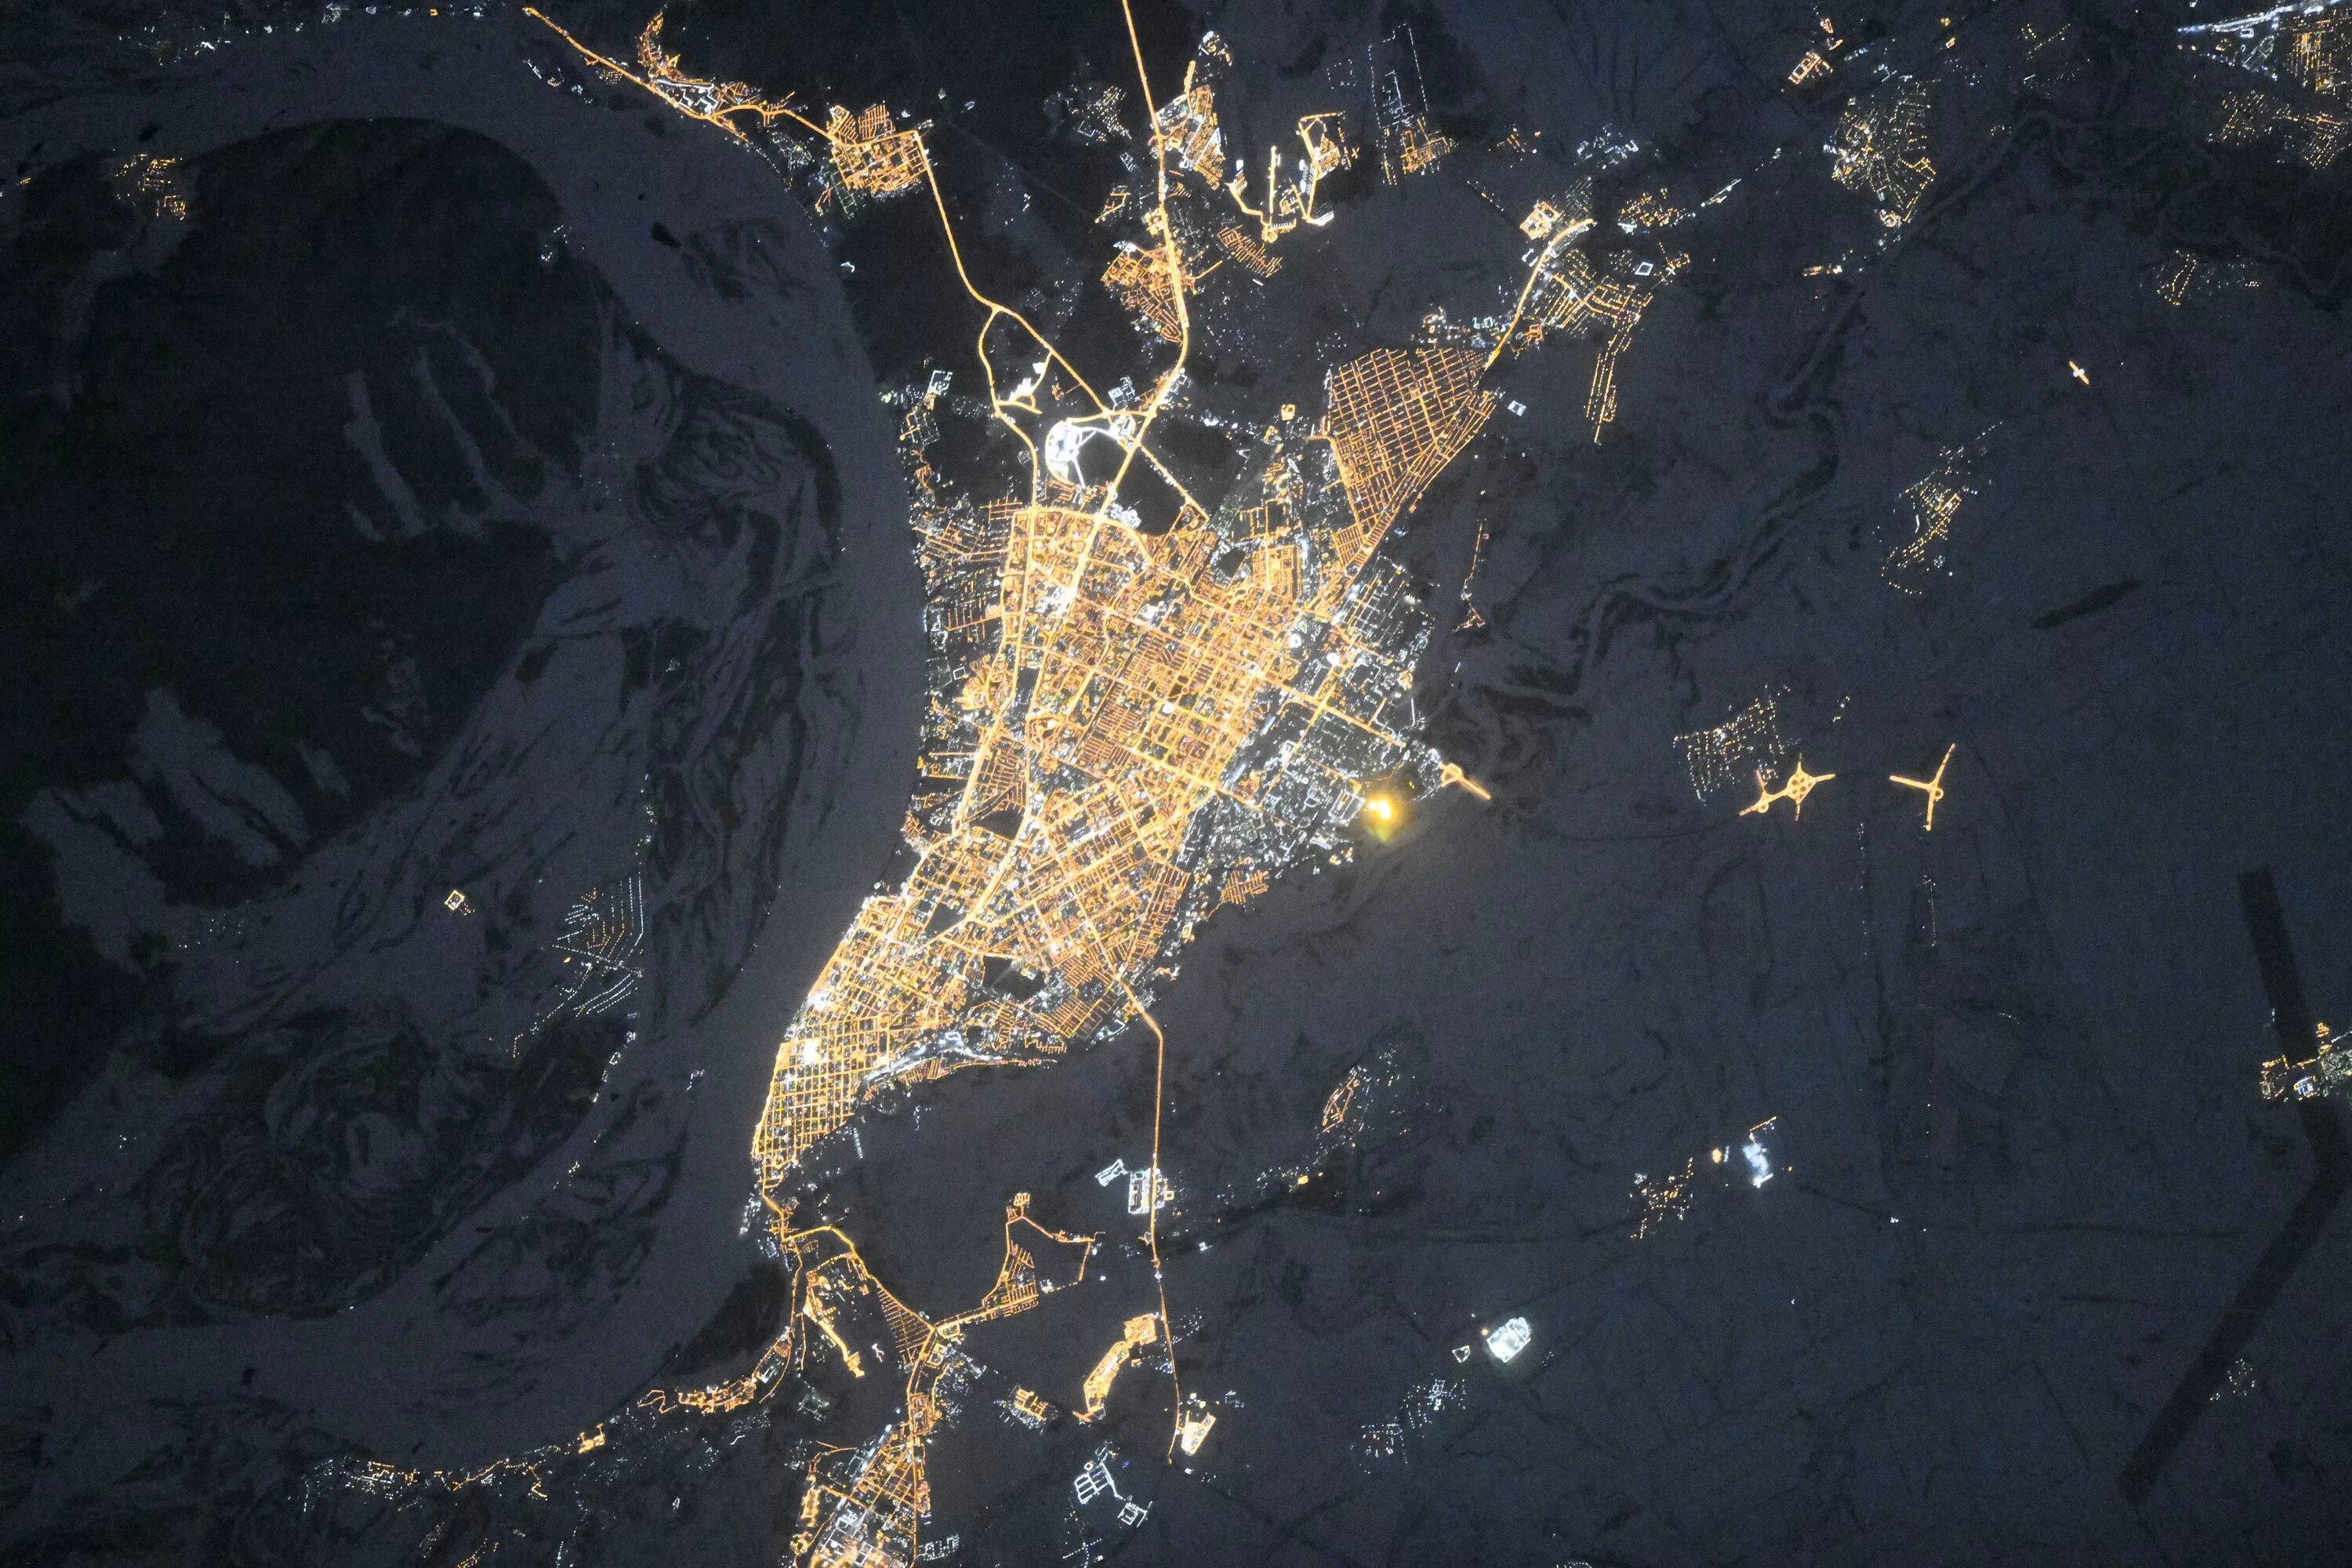 Границы в реальном времени. Снимок Самары из космоса. Ночной снимок из космоса город Самара. Космические снимки. Город в космосе.